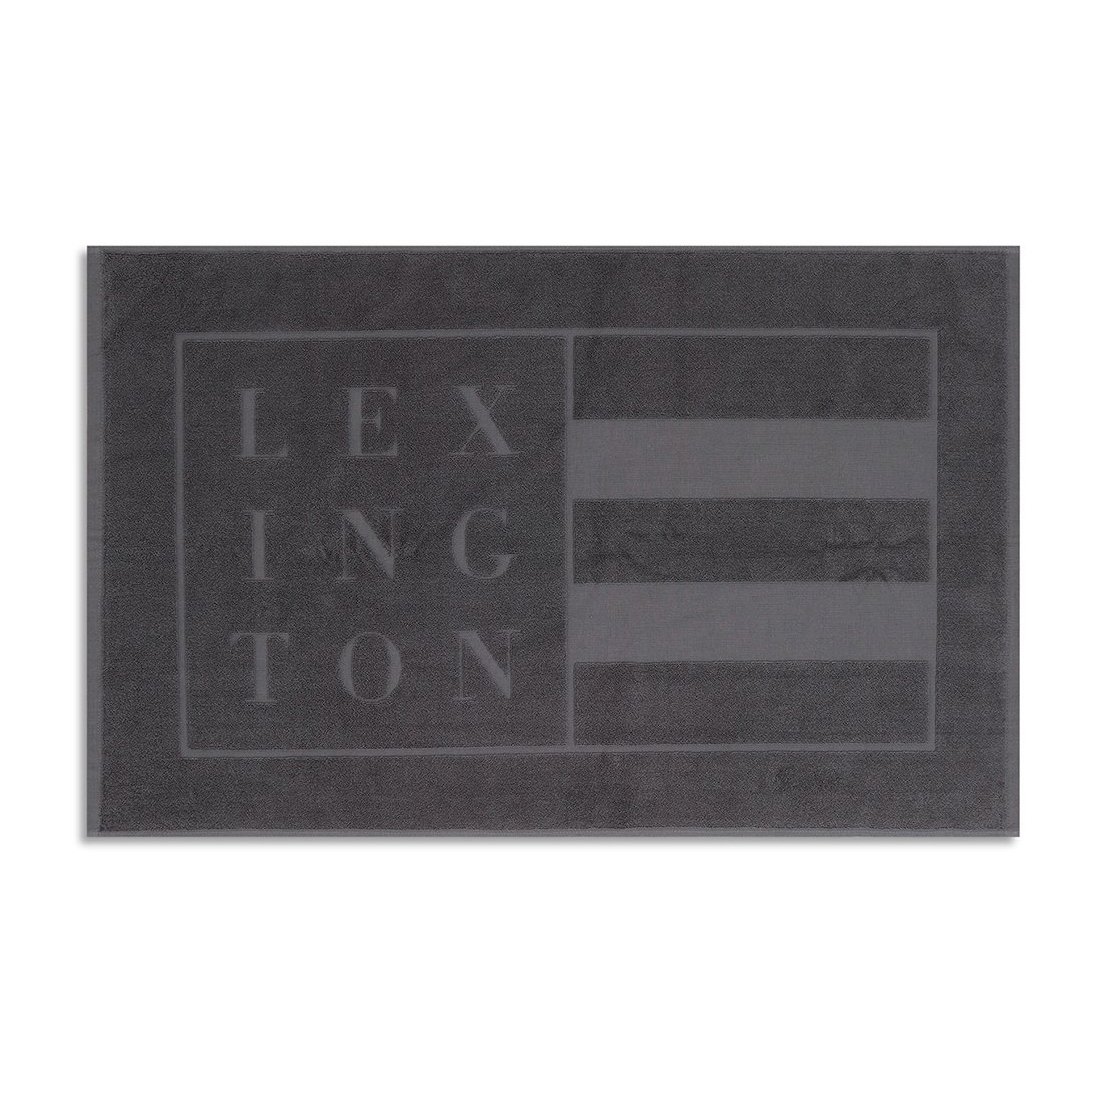 Lexington Lexington Hotel kylpyhuoneenmatto 60×90 cm Dark gray